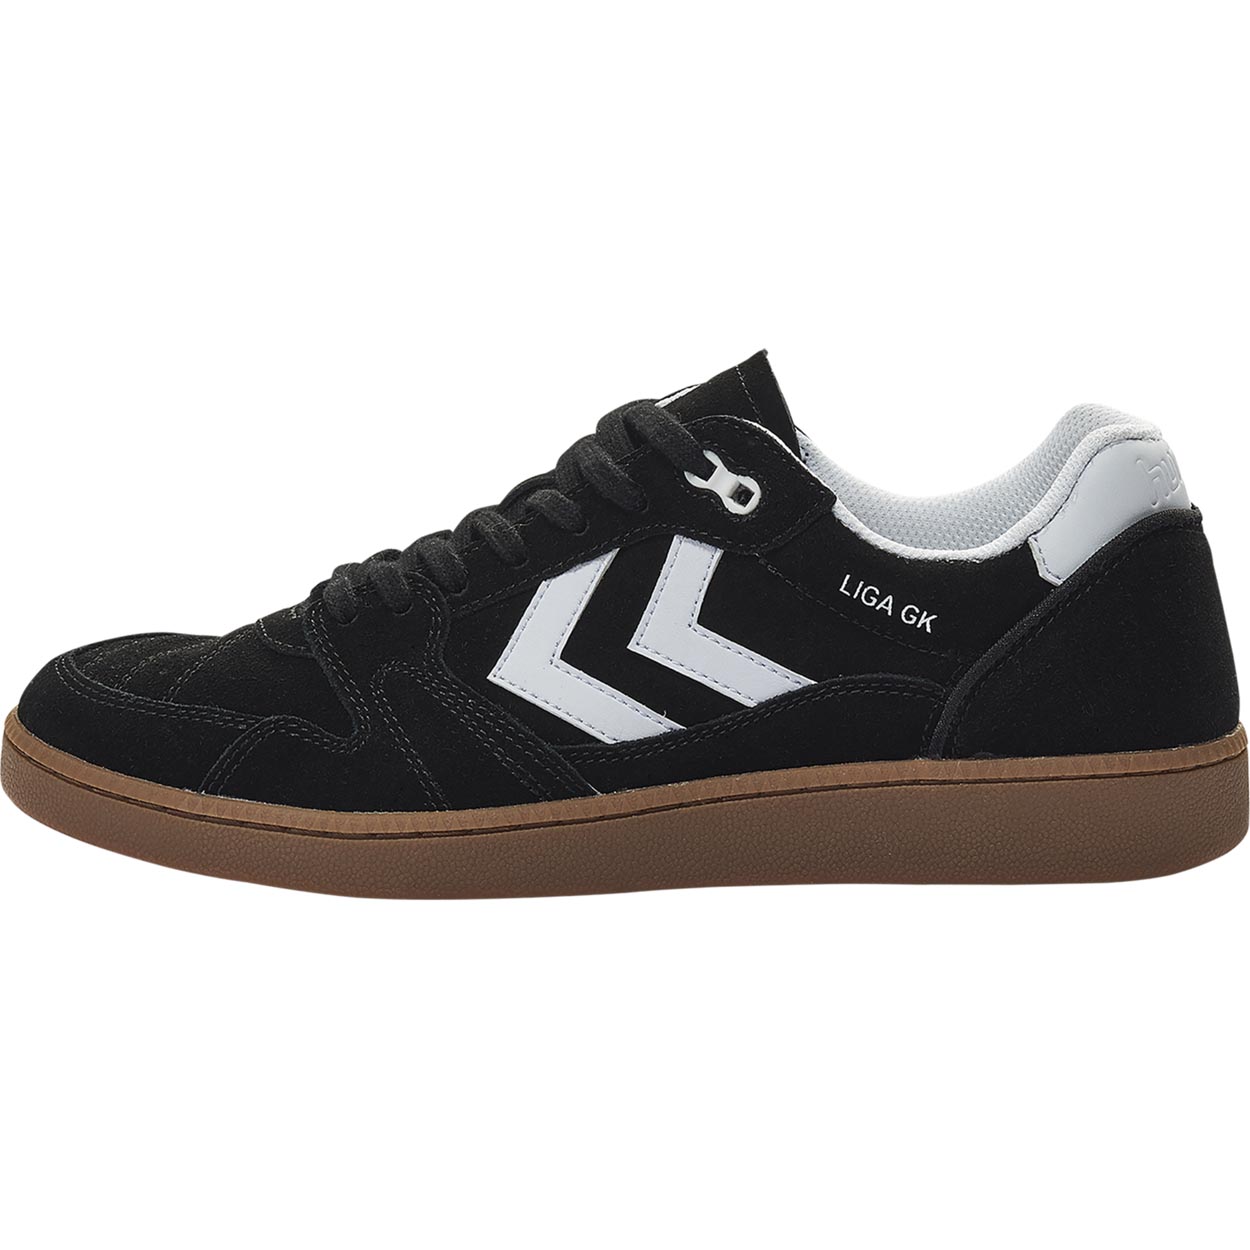 hummel_LIGA_GK_chaussures_de_handball_black (2)